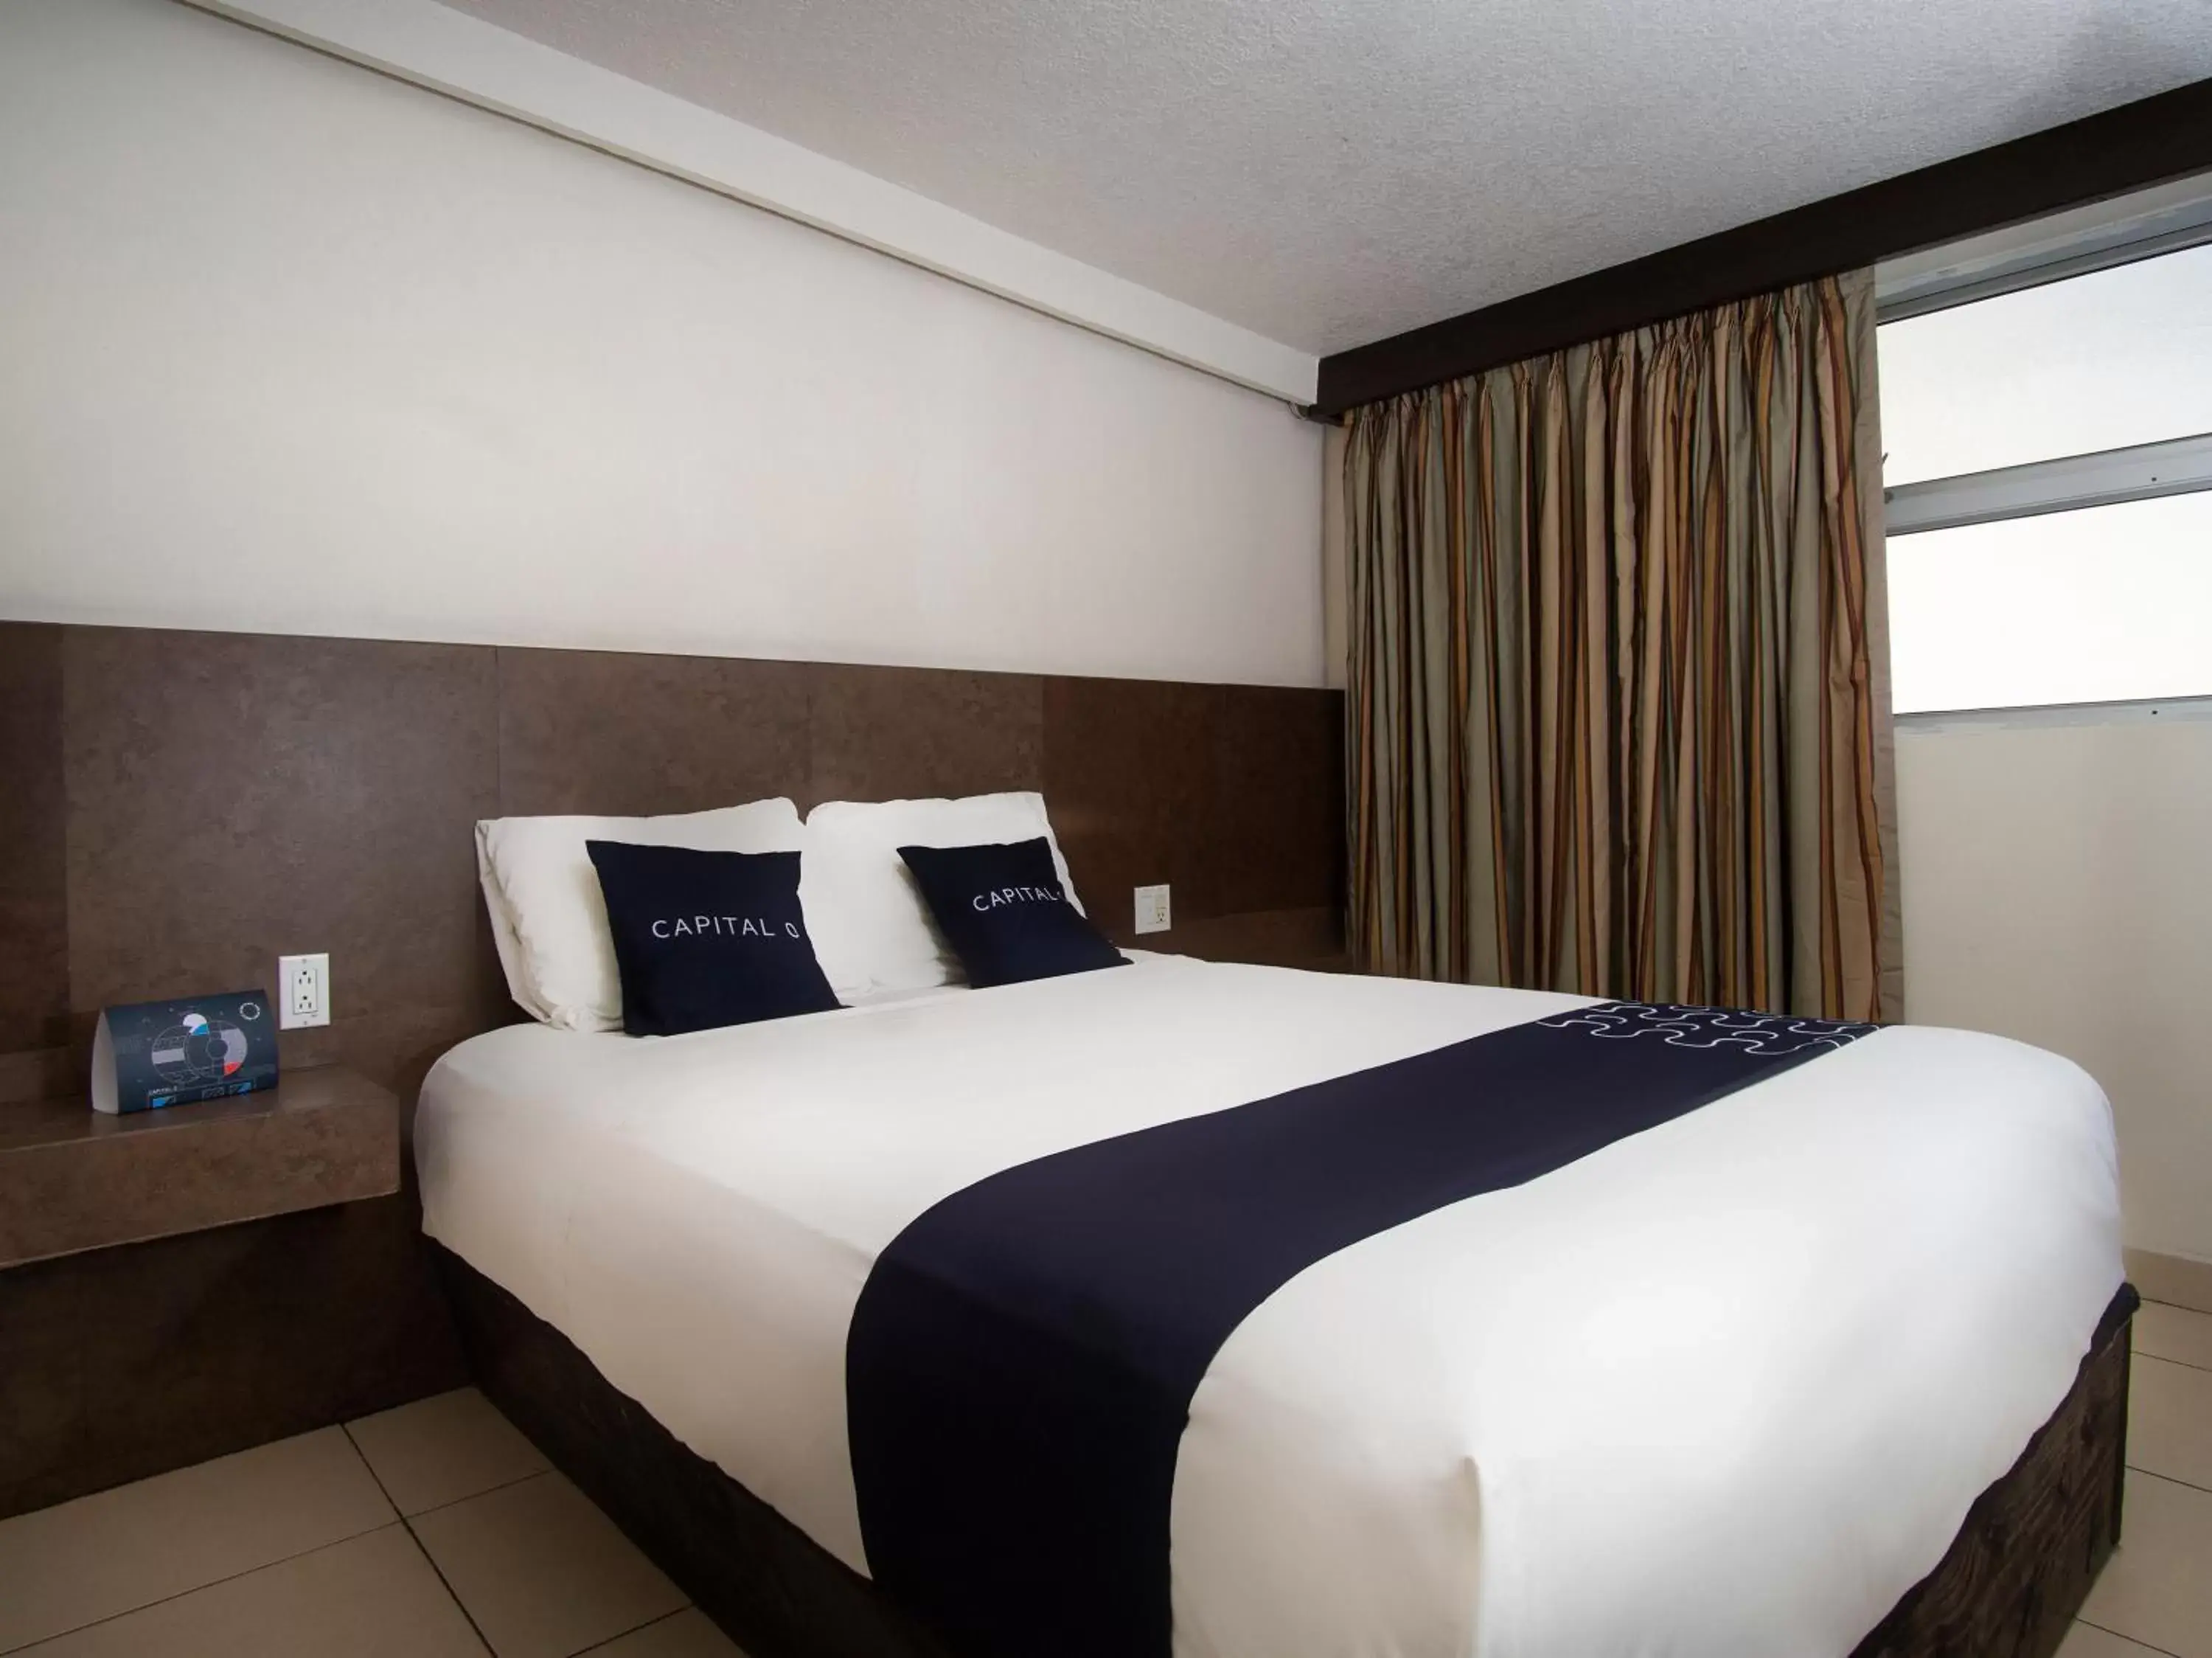 Bedroom, Bed in CAPITAL O Hotel Rose, Ensenada